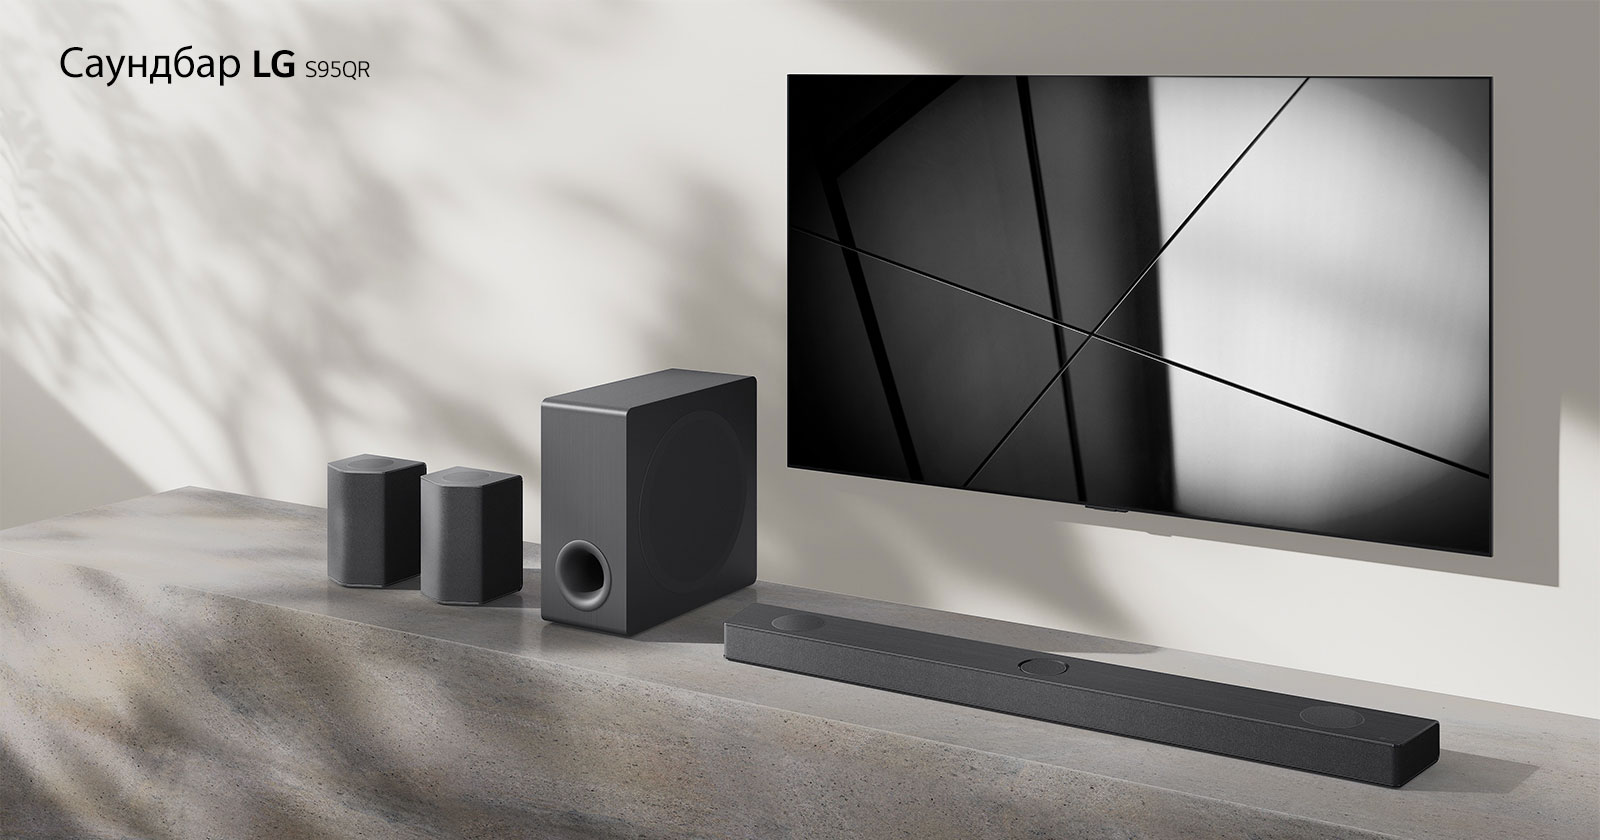 Саундбар LG S95QR и телевизор LG са поставени заедно във всекидневна. Телевизорът е включен и показва черно-бяло изображение.